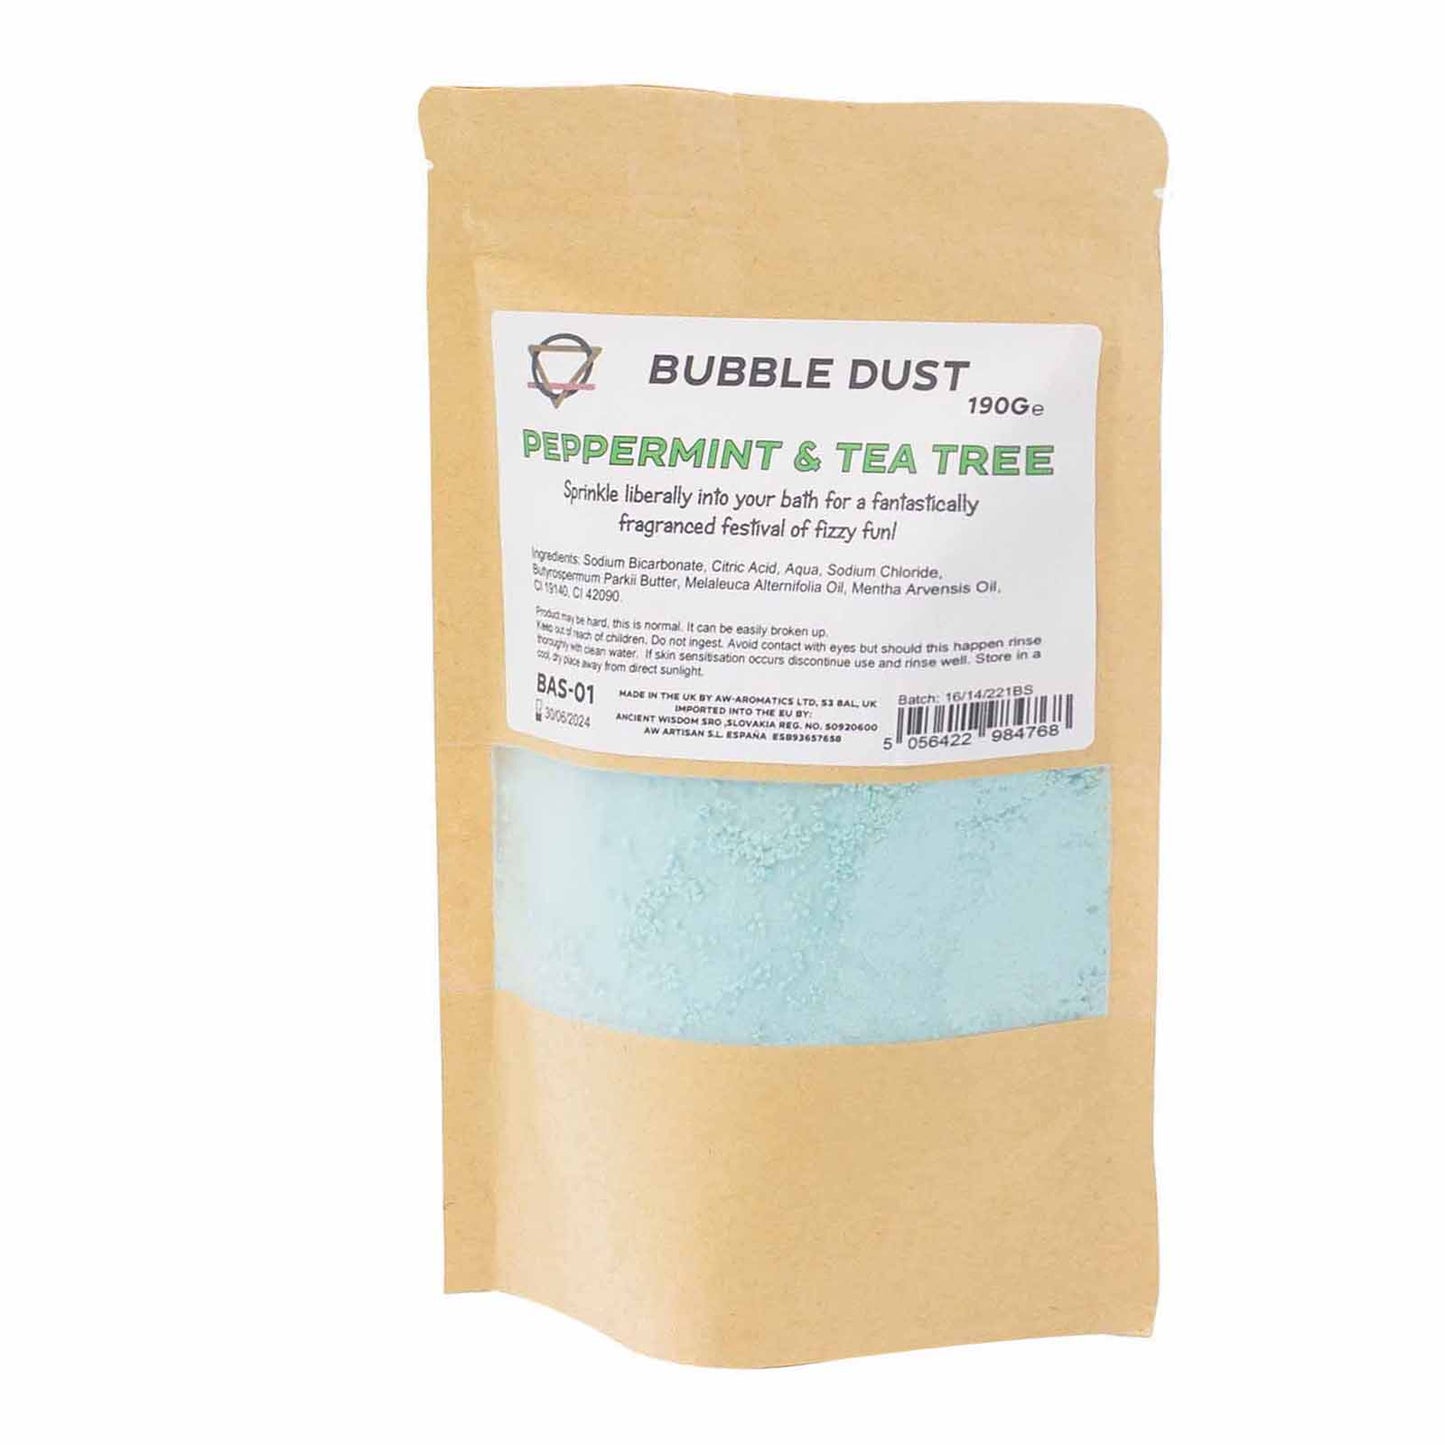 Peppermint & Tea Tree Bath Bubble Dust 190grams